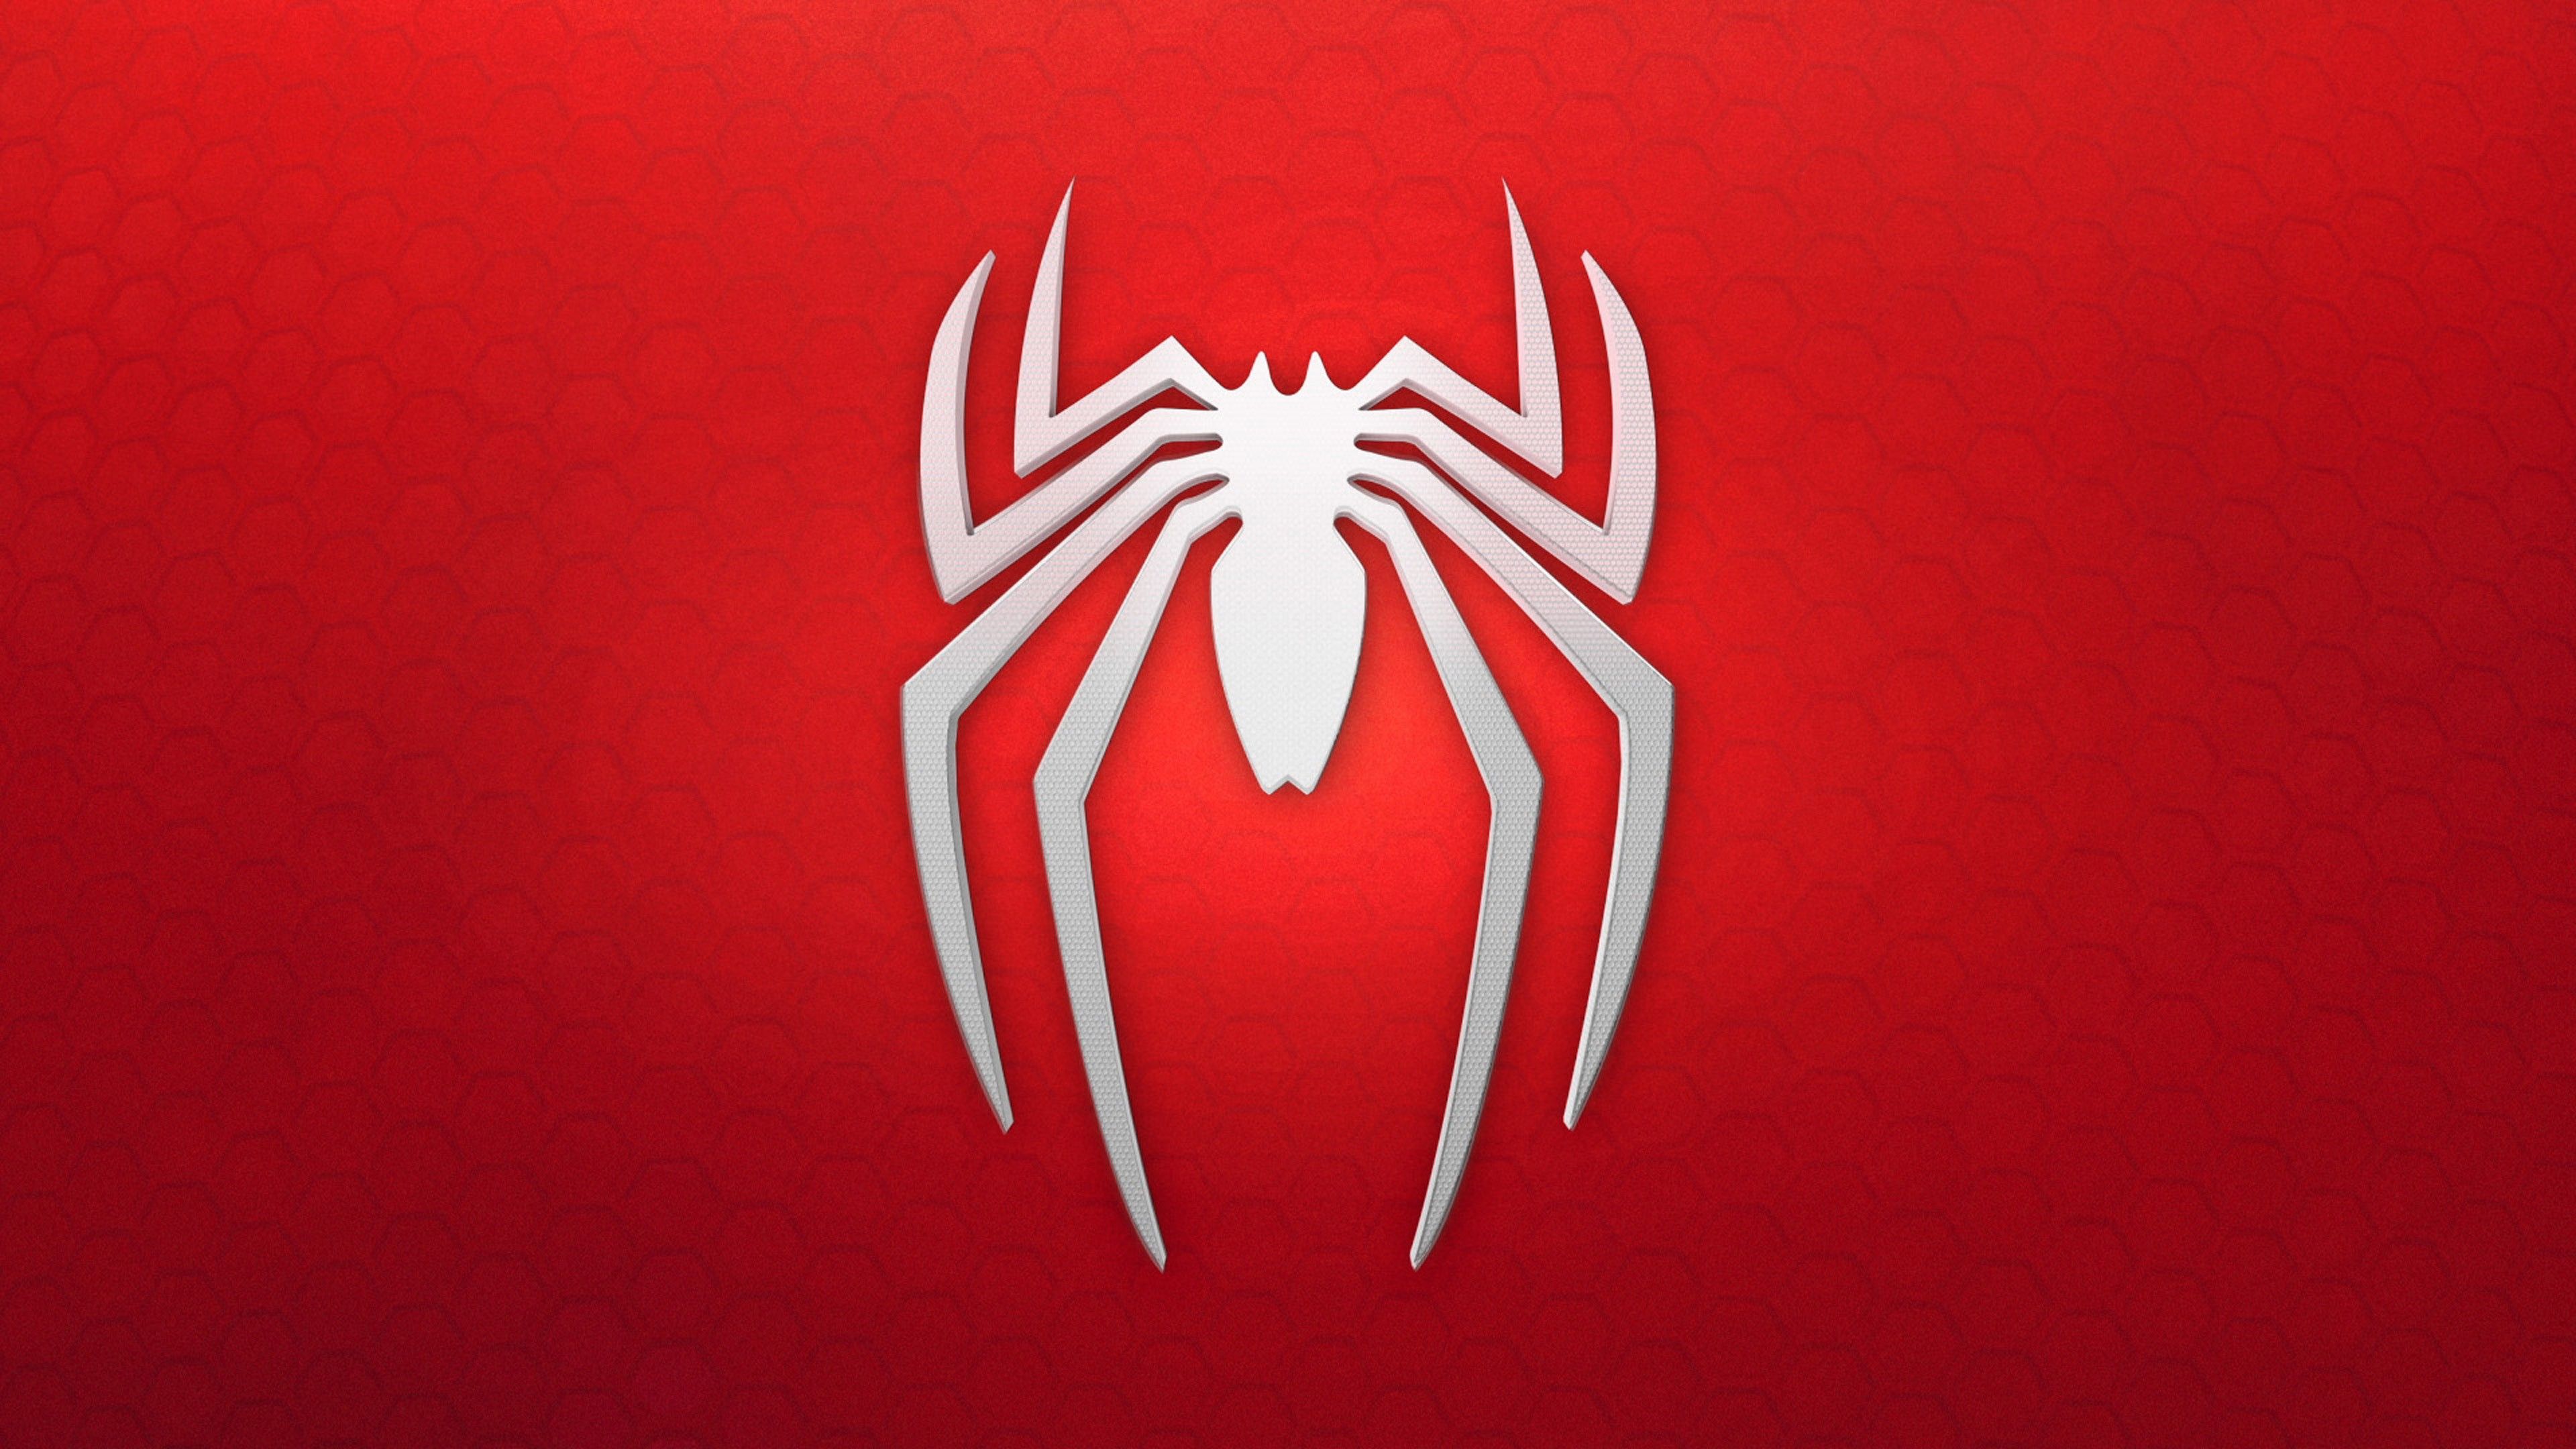 Spiderman fondo de pantalla, logo, fondo, rojo, blanco, Juegos # 11596